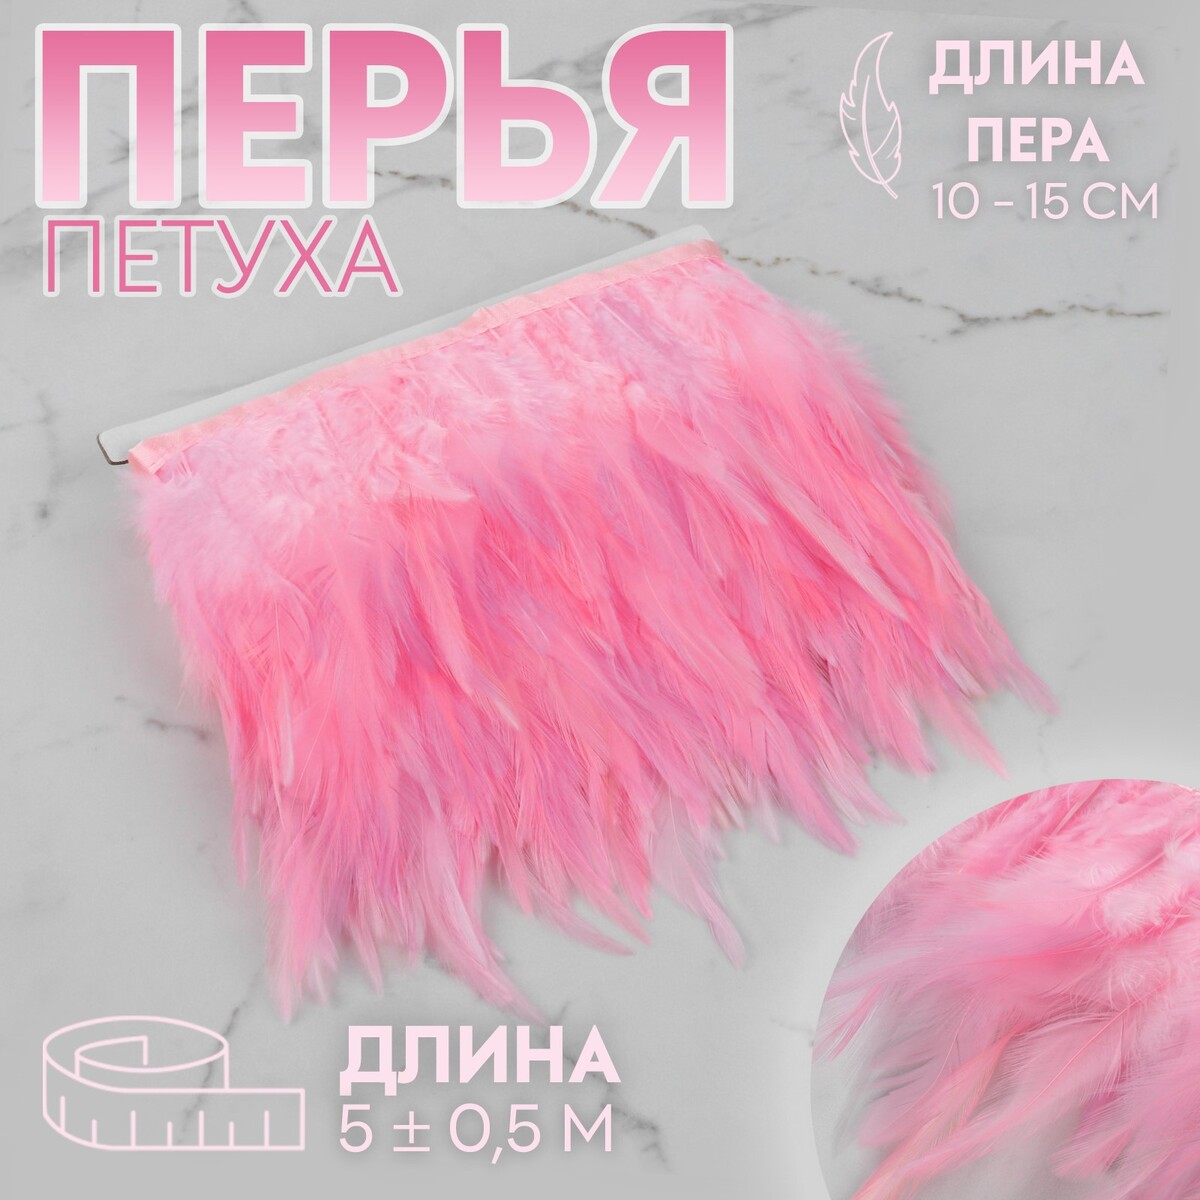 Тесьма с перьями петуха, 10-15 см, 5 ± 0,5 м, цвет розовый тесьма с перьями страуса 8 10 см 5 ± 0 5 м бордовый